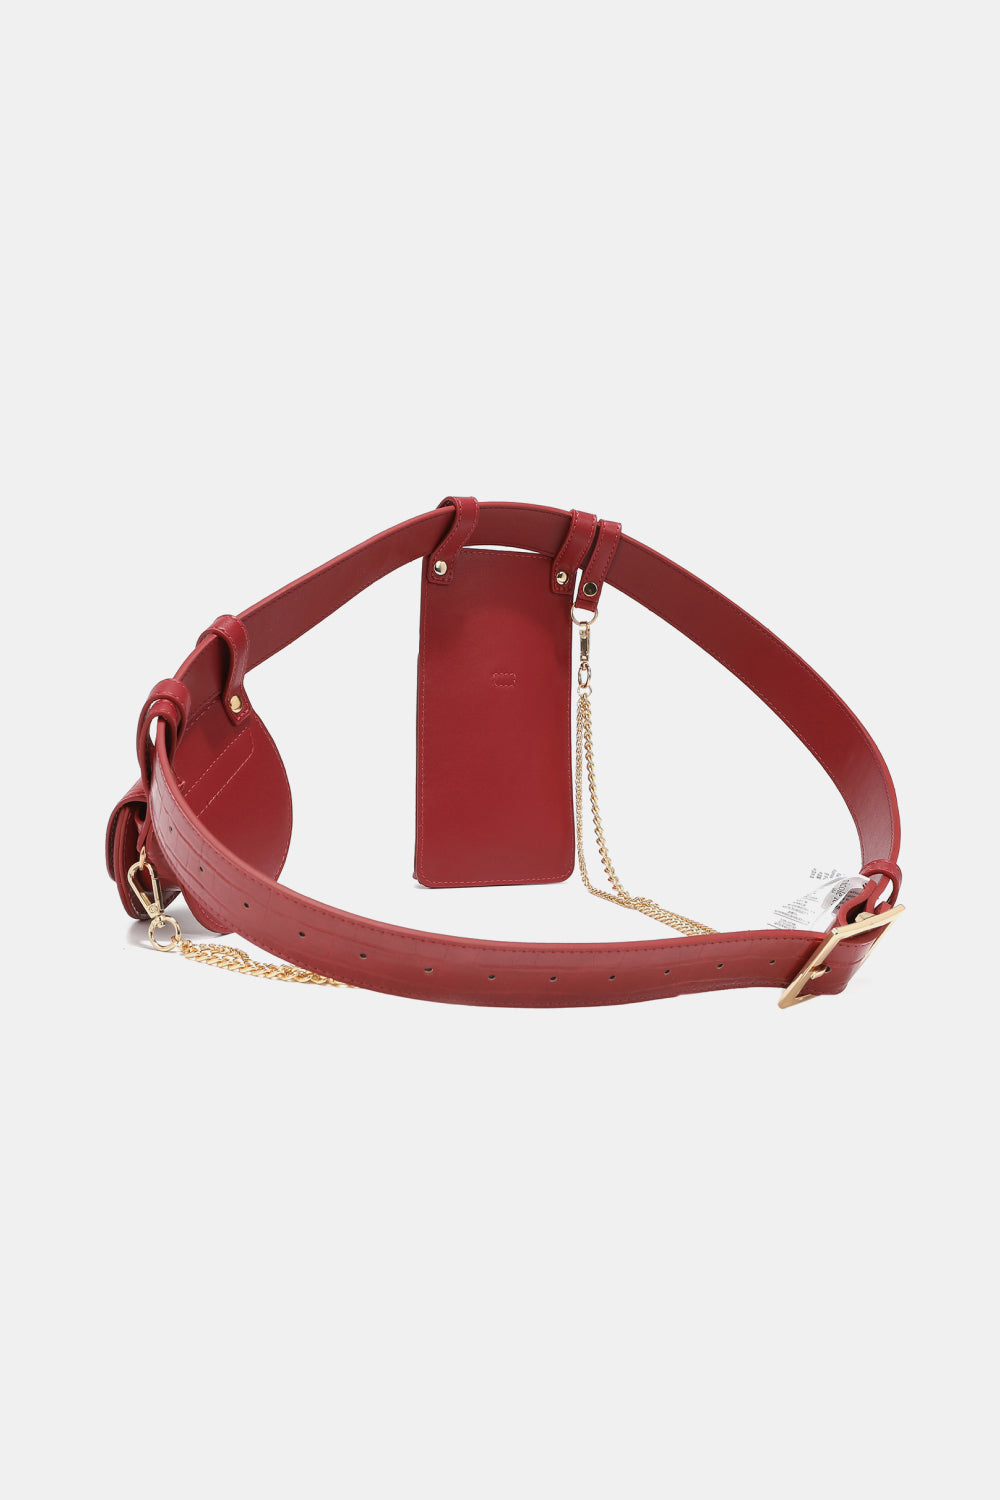 Ariella Belt Bag in Black, Chestnut, Olive & Red